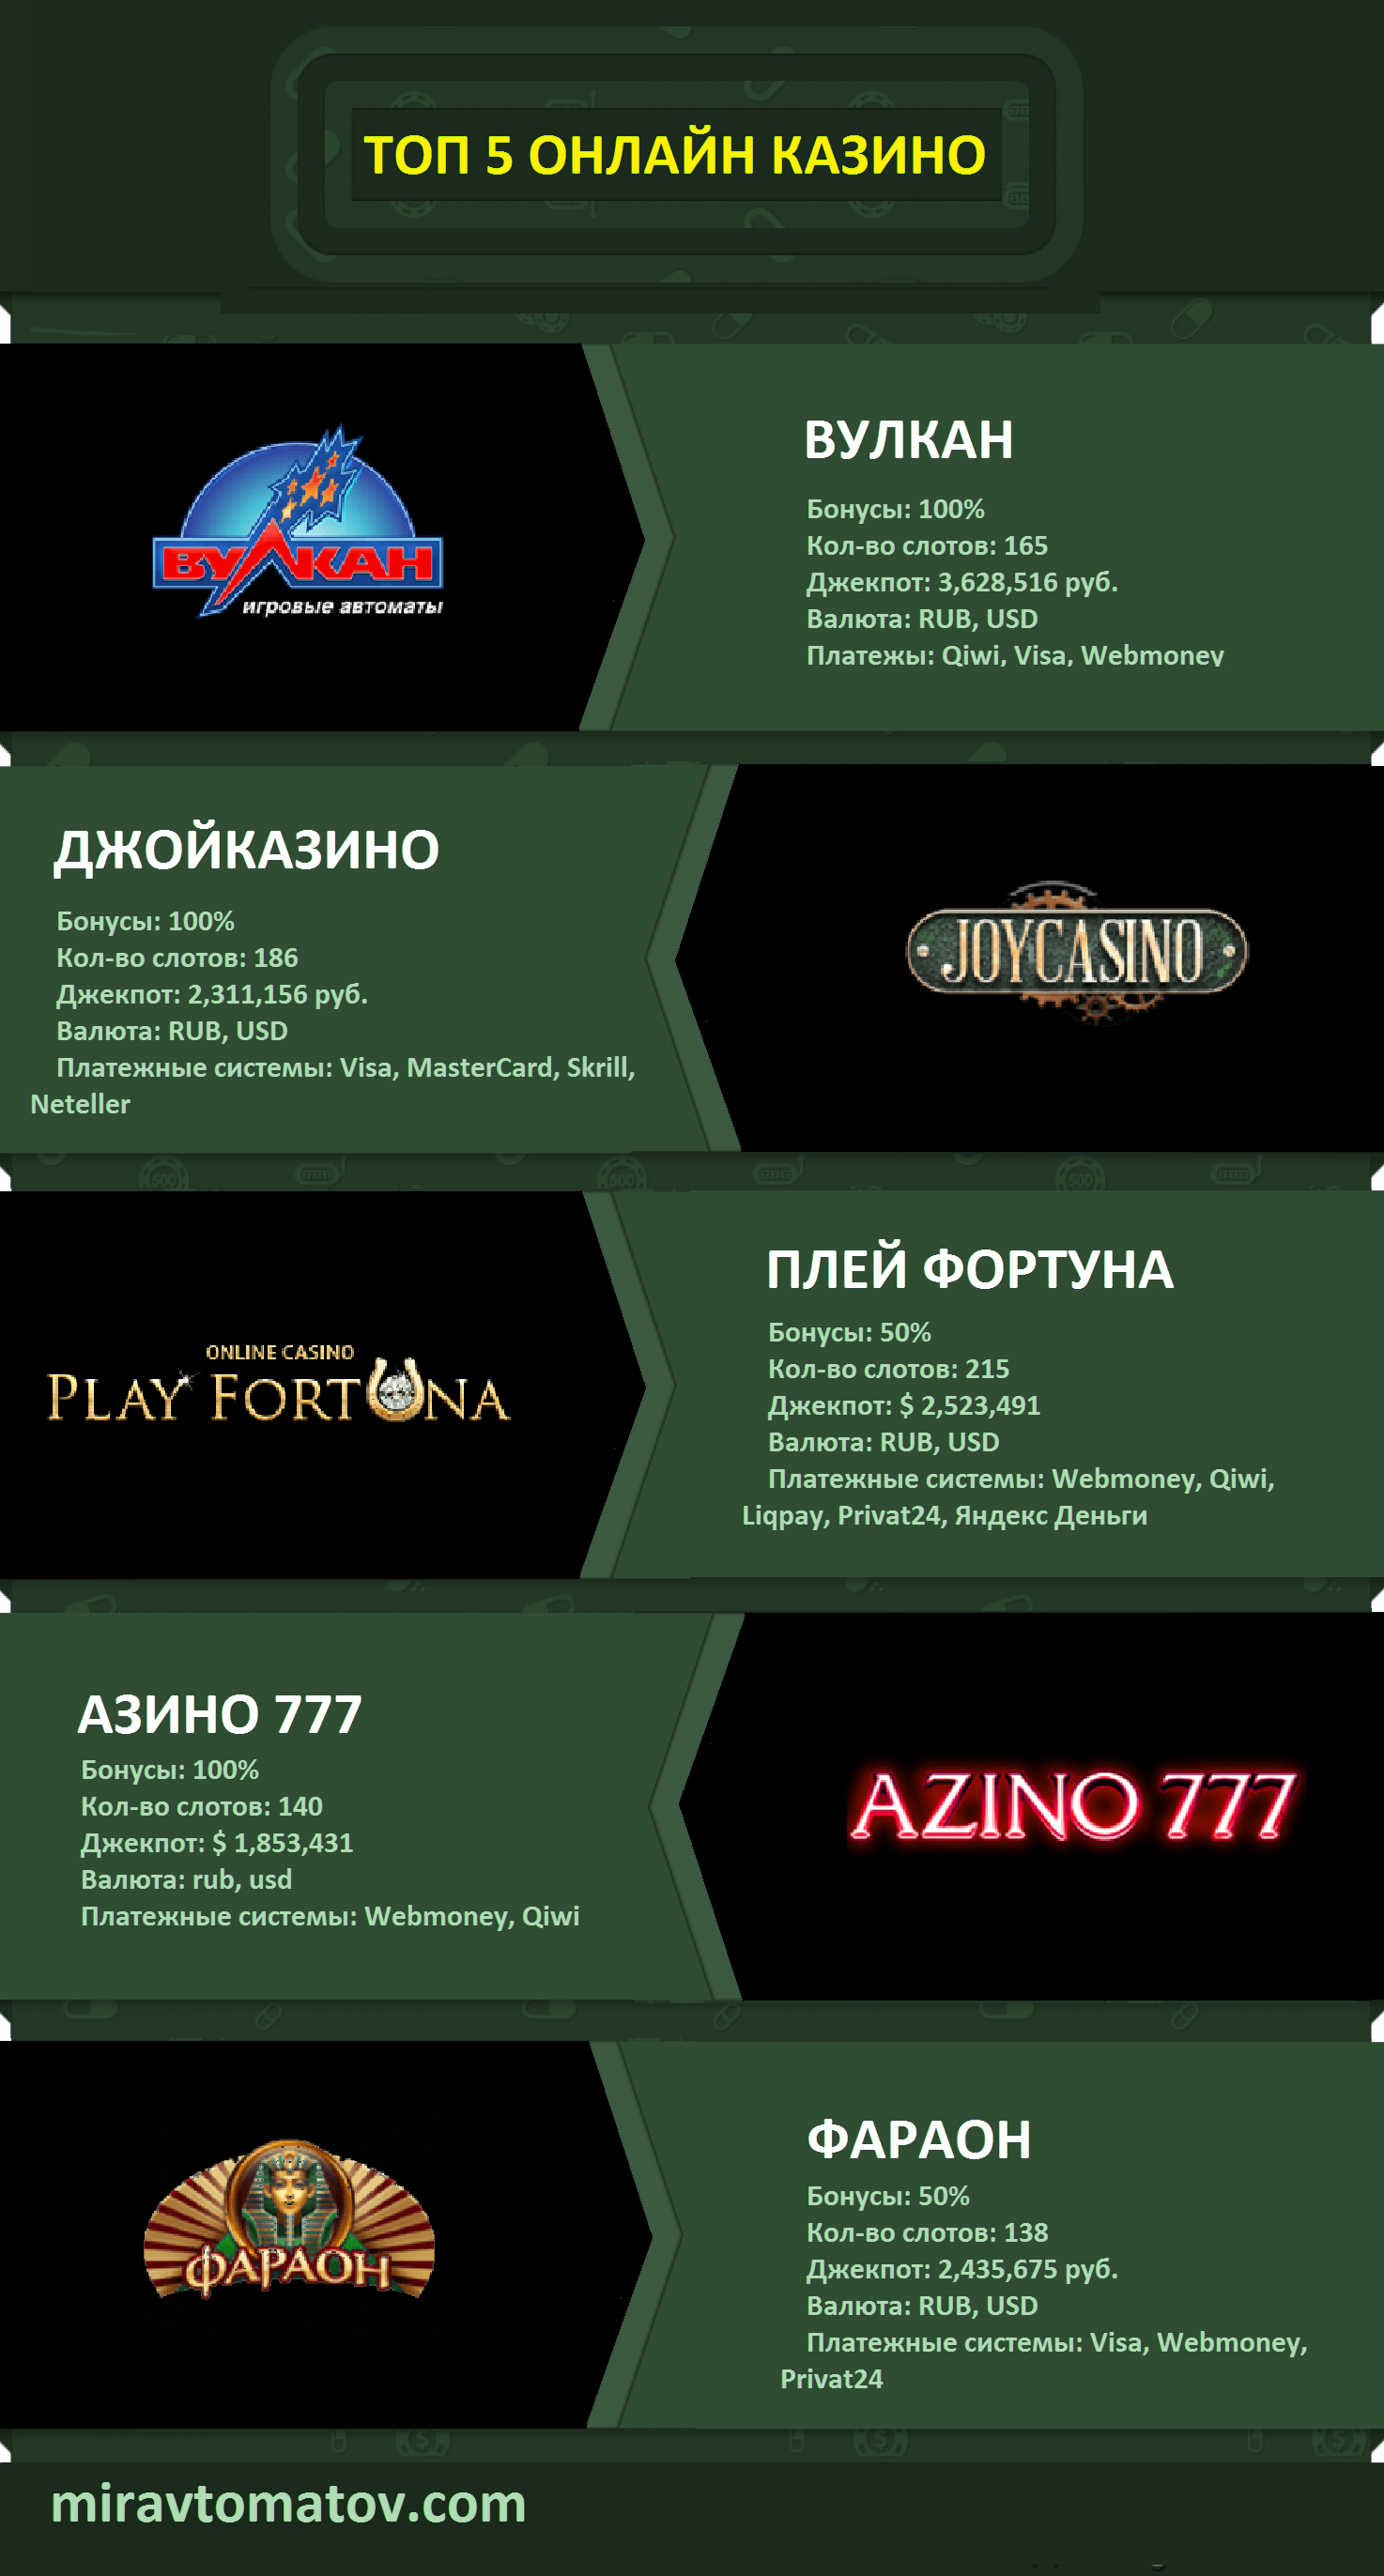 Все сайты с казино в мире